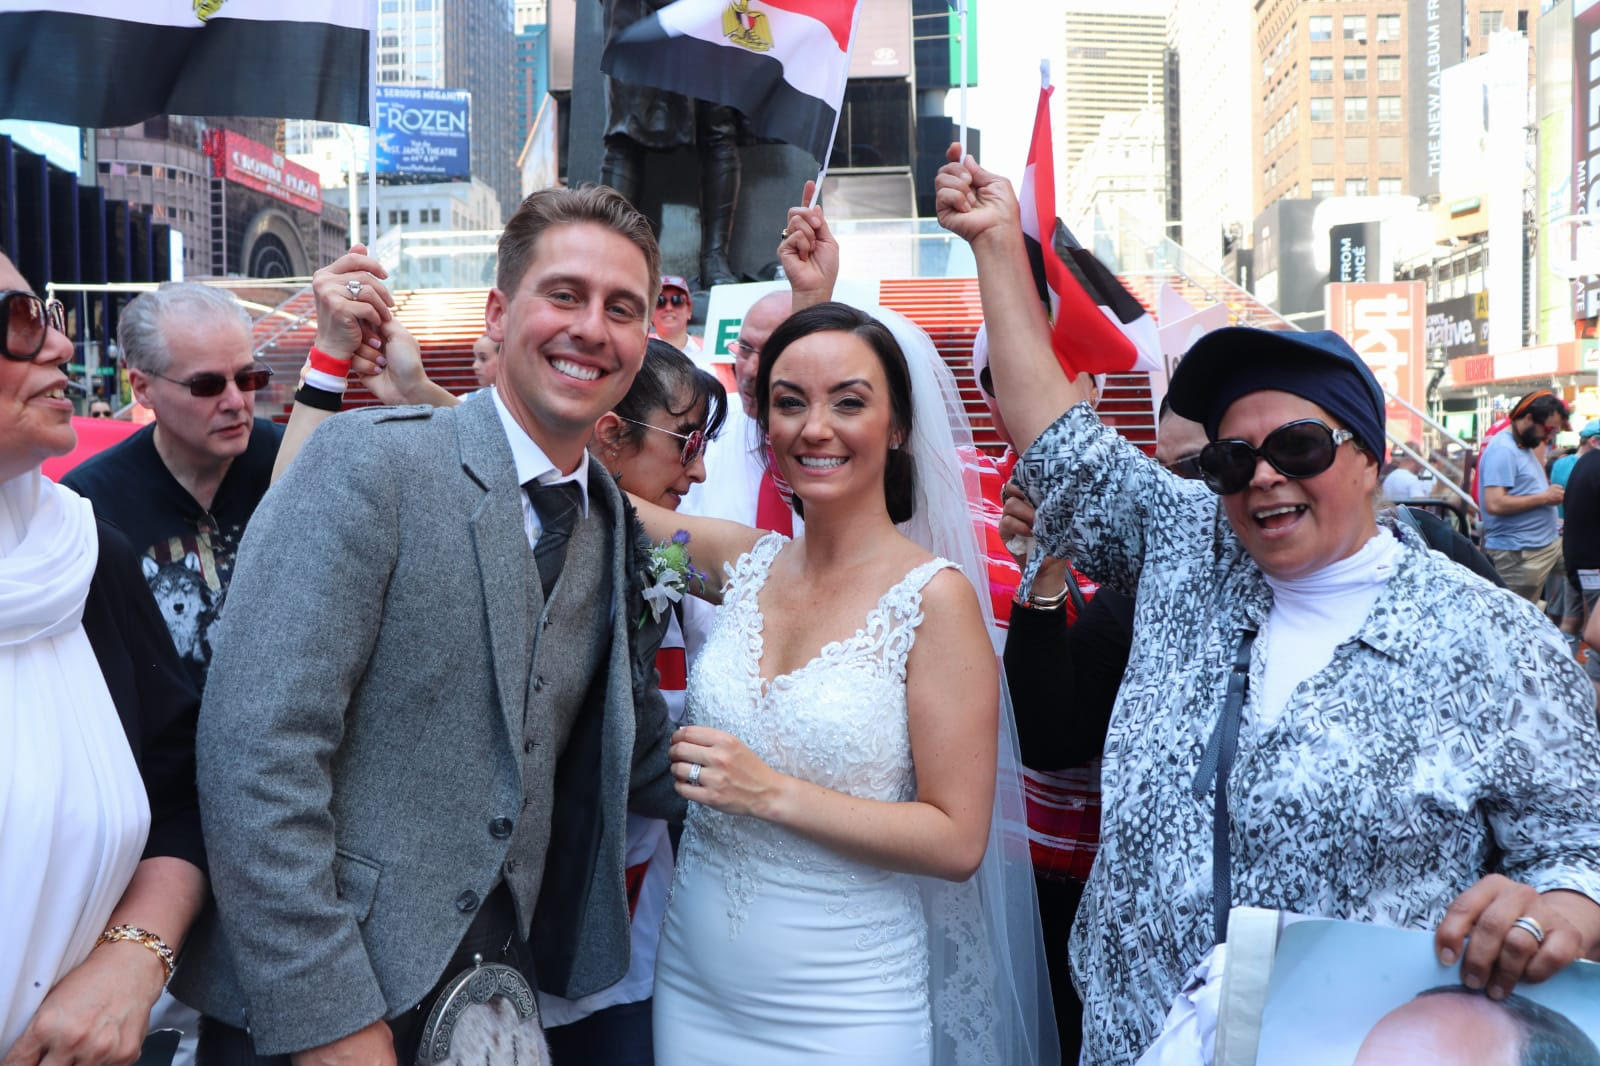   عروسان أمريكيان يشاركان المصريين الاحتفال بـ30 يونيو فى نيويورك